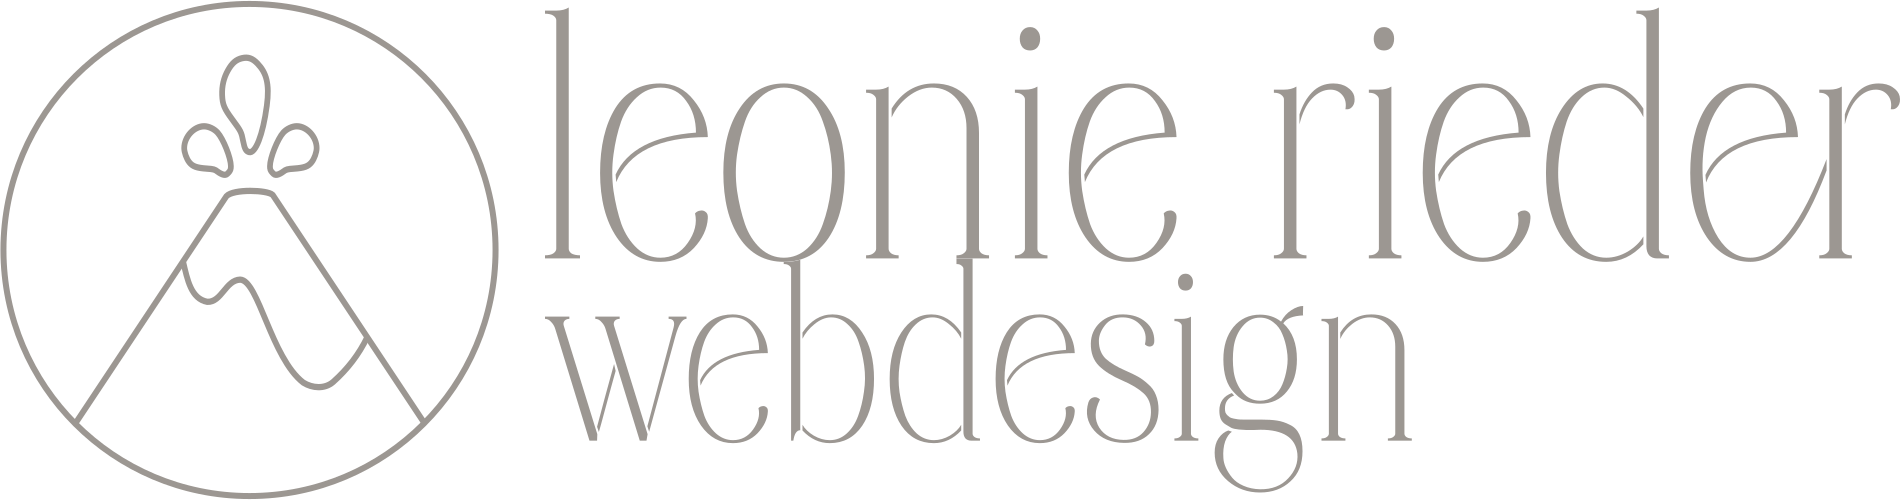 Leonie Rieder Webdesign